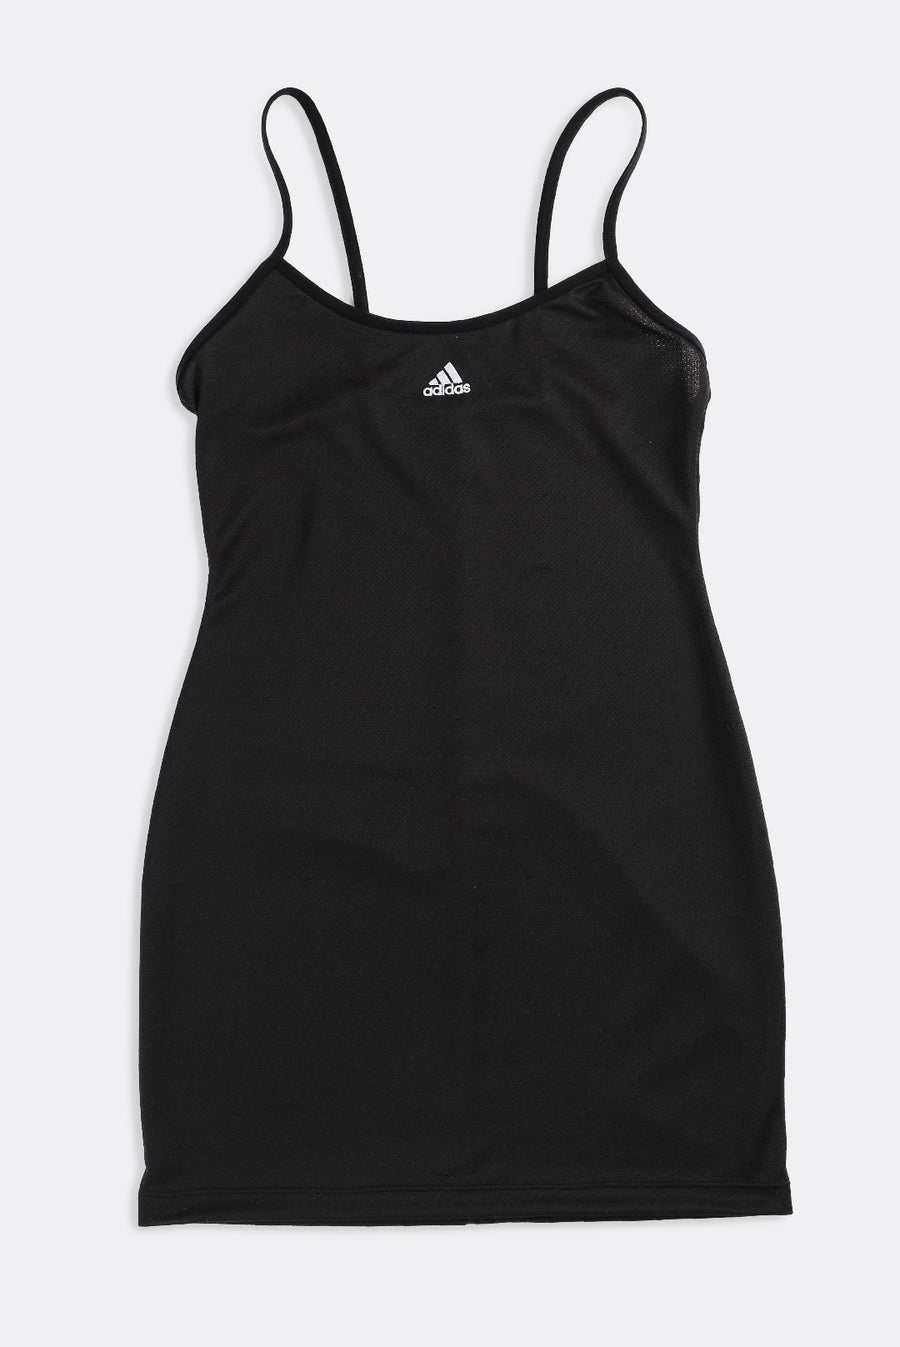 Rework Adidas Athletic Mini Dress - XS, S, M, L, XL